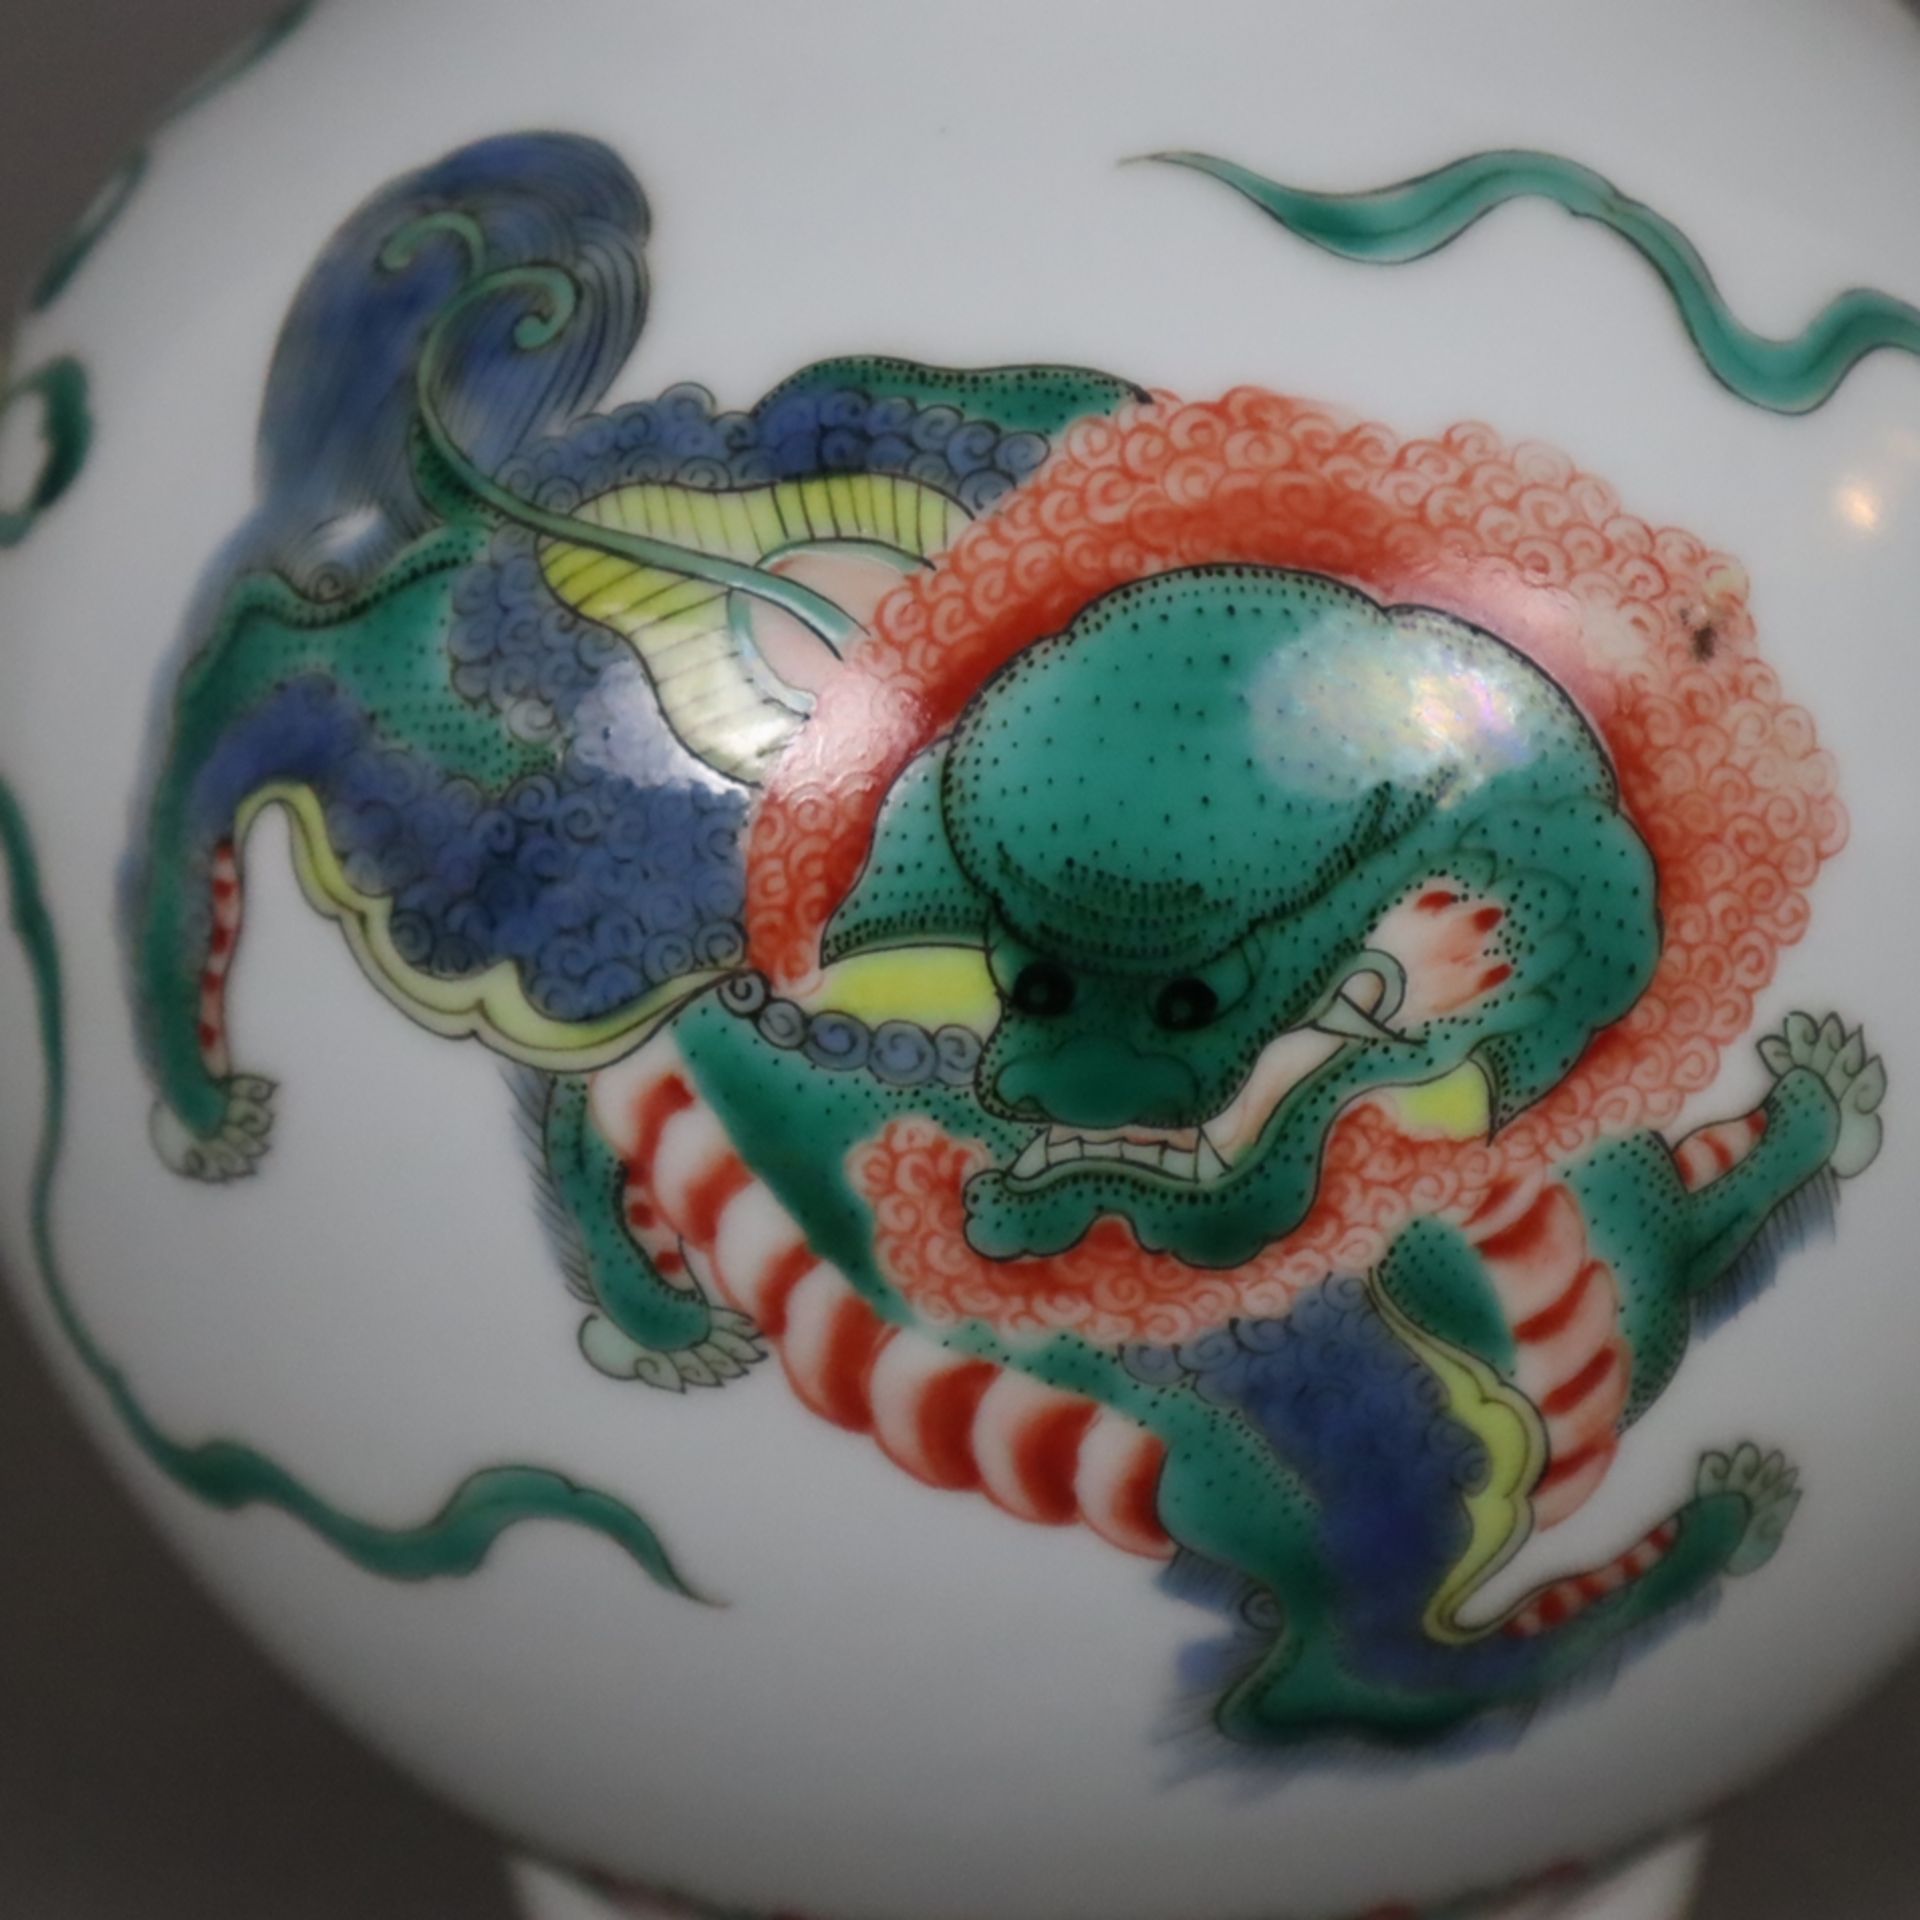 Flaschenvase - China, Porzellan, umlaufend spielende Shishis mit Brokatbällen sowie Blüten-, Ruyiko - Bild 4 aus 9